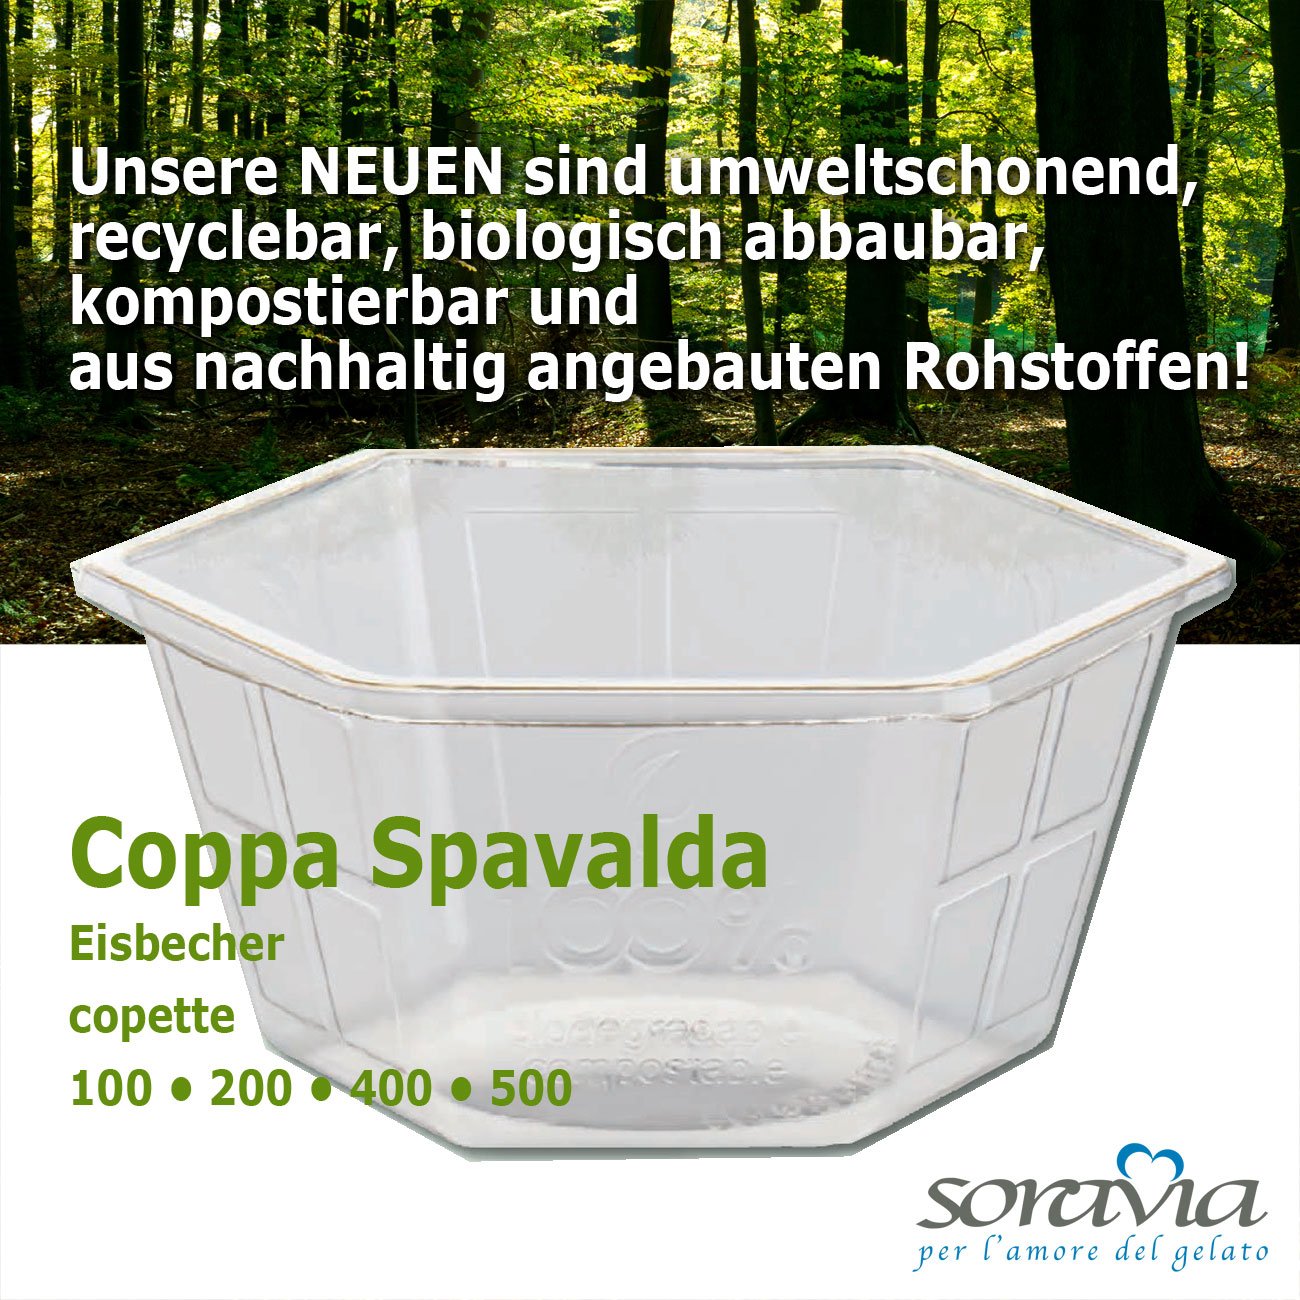 Coppa Spavalda 100 - Karton 2400 Stück -  Eisbecher aus biologisch abbaubarem Plastik 